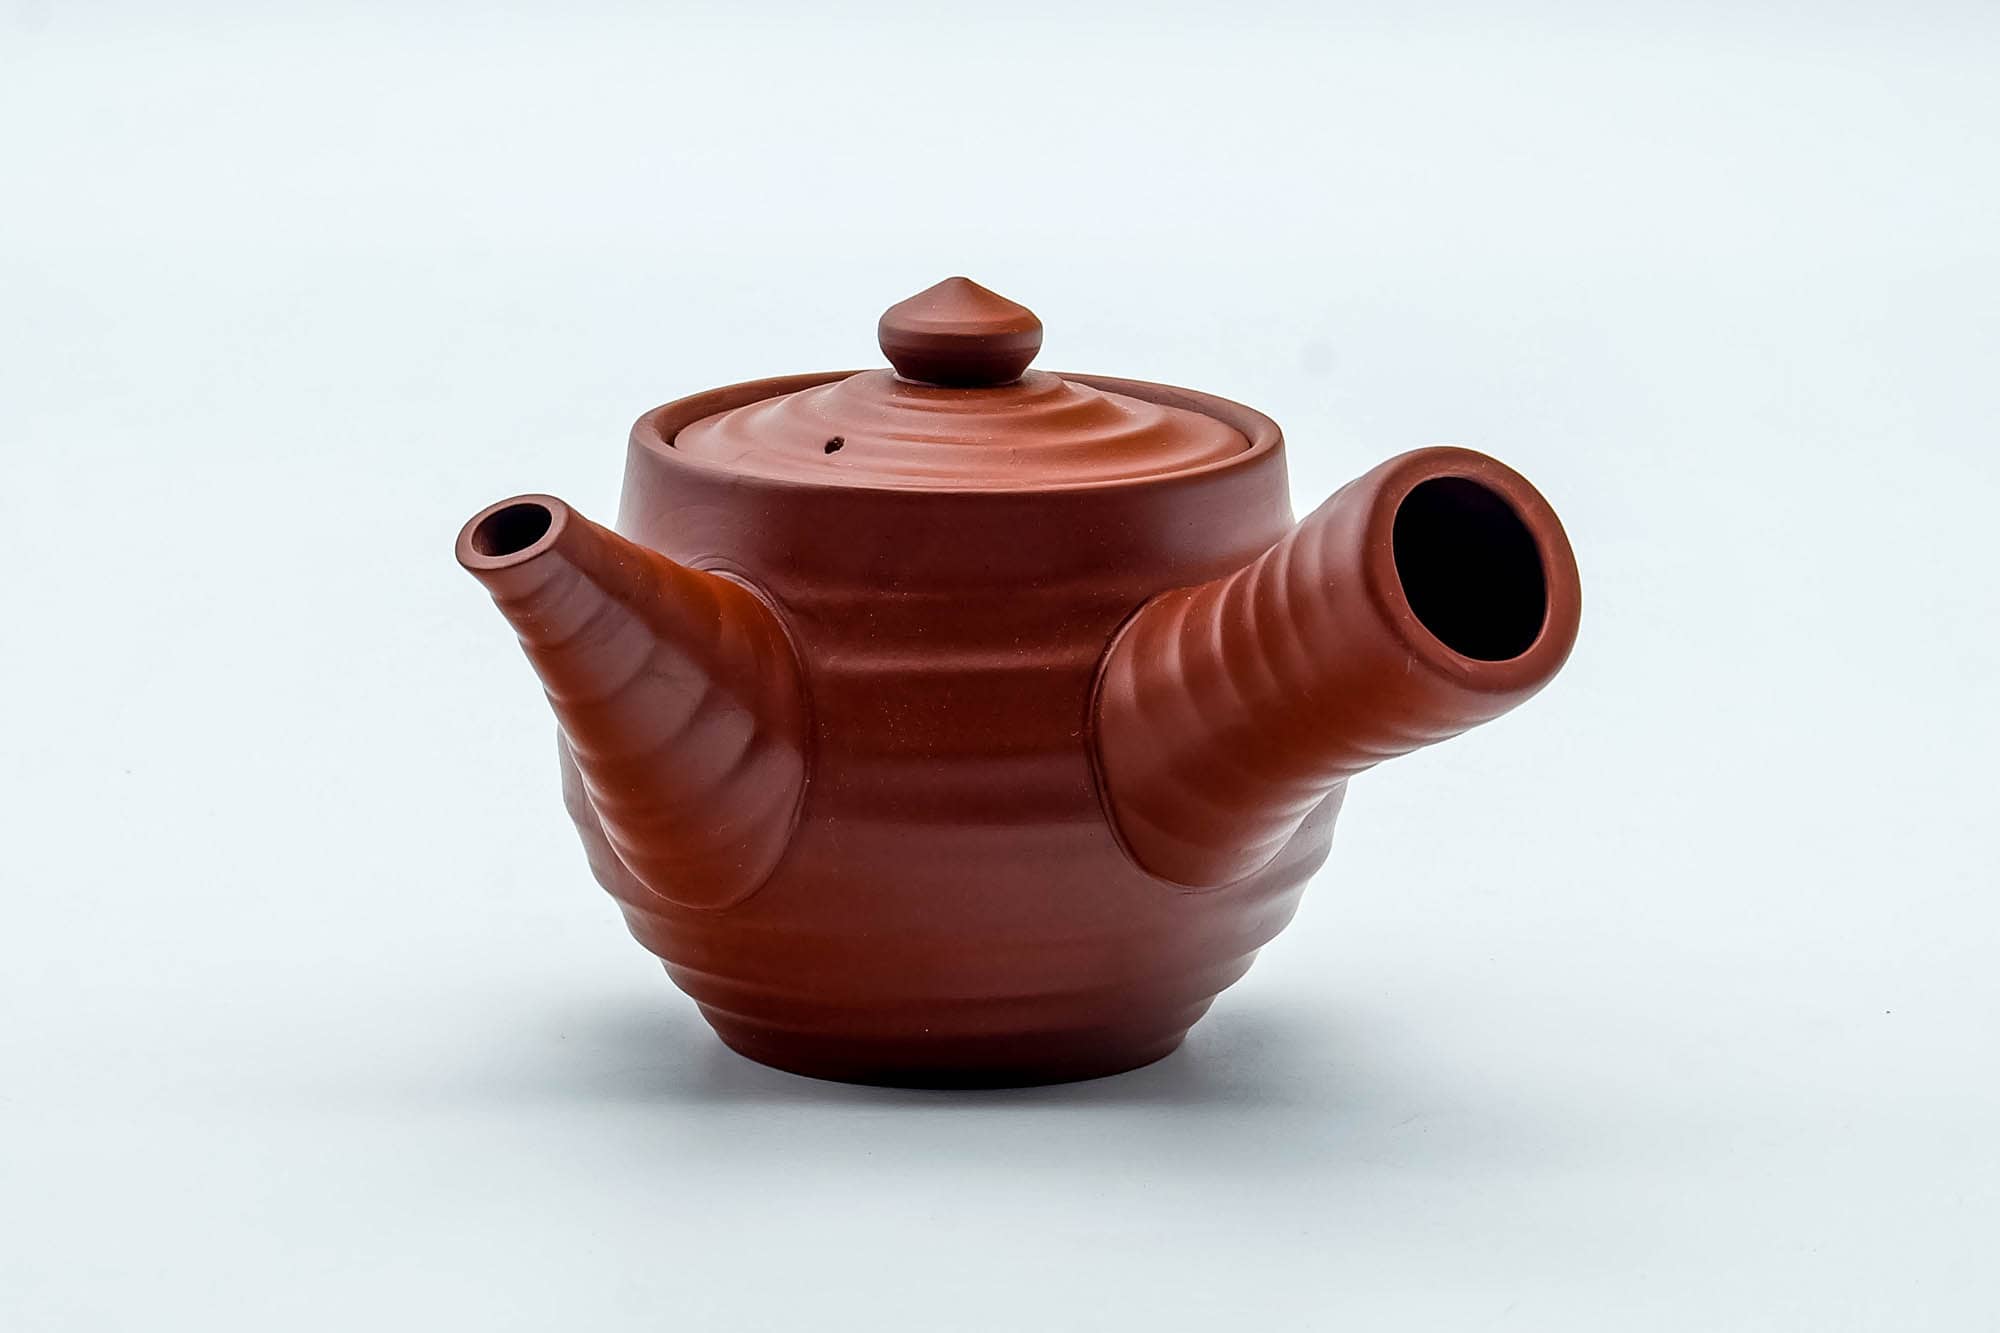 Japanese Kyusu - Spiraling Red Shudei Tokoname-yaki Ceramic Filter Teapot - 260ml